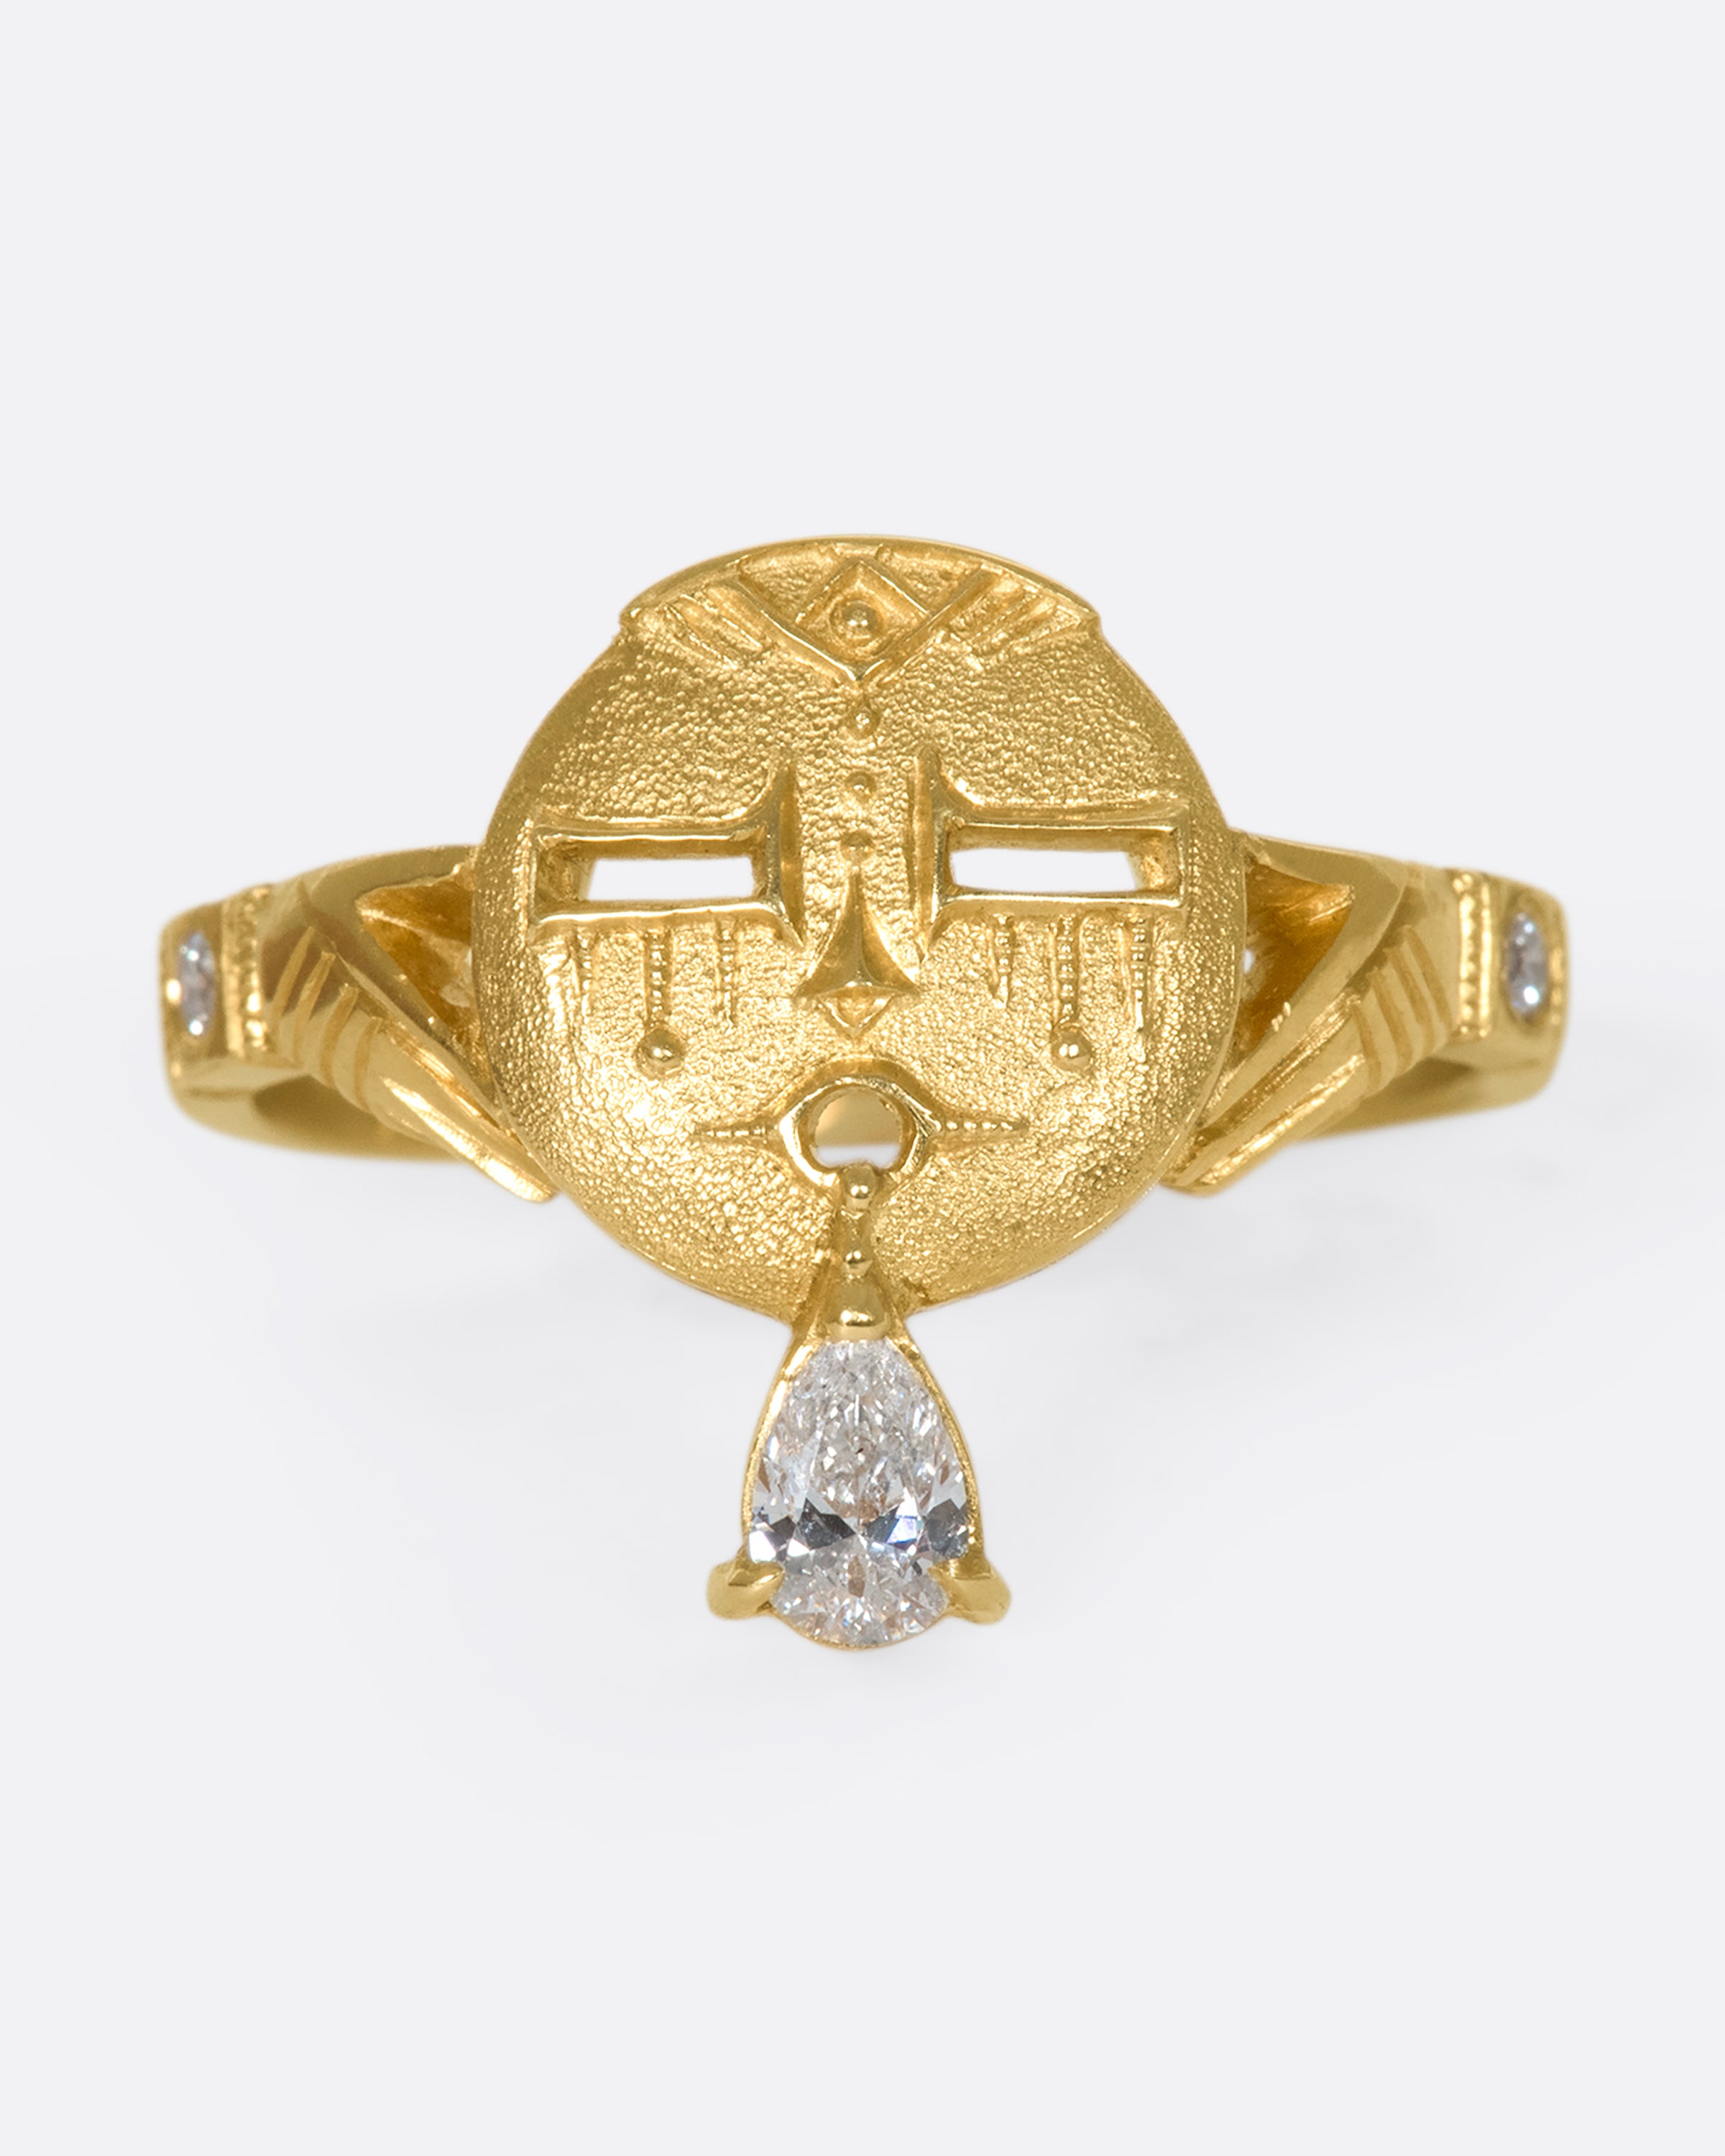 Shiv Lingam Gold Pendant